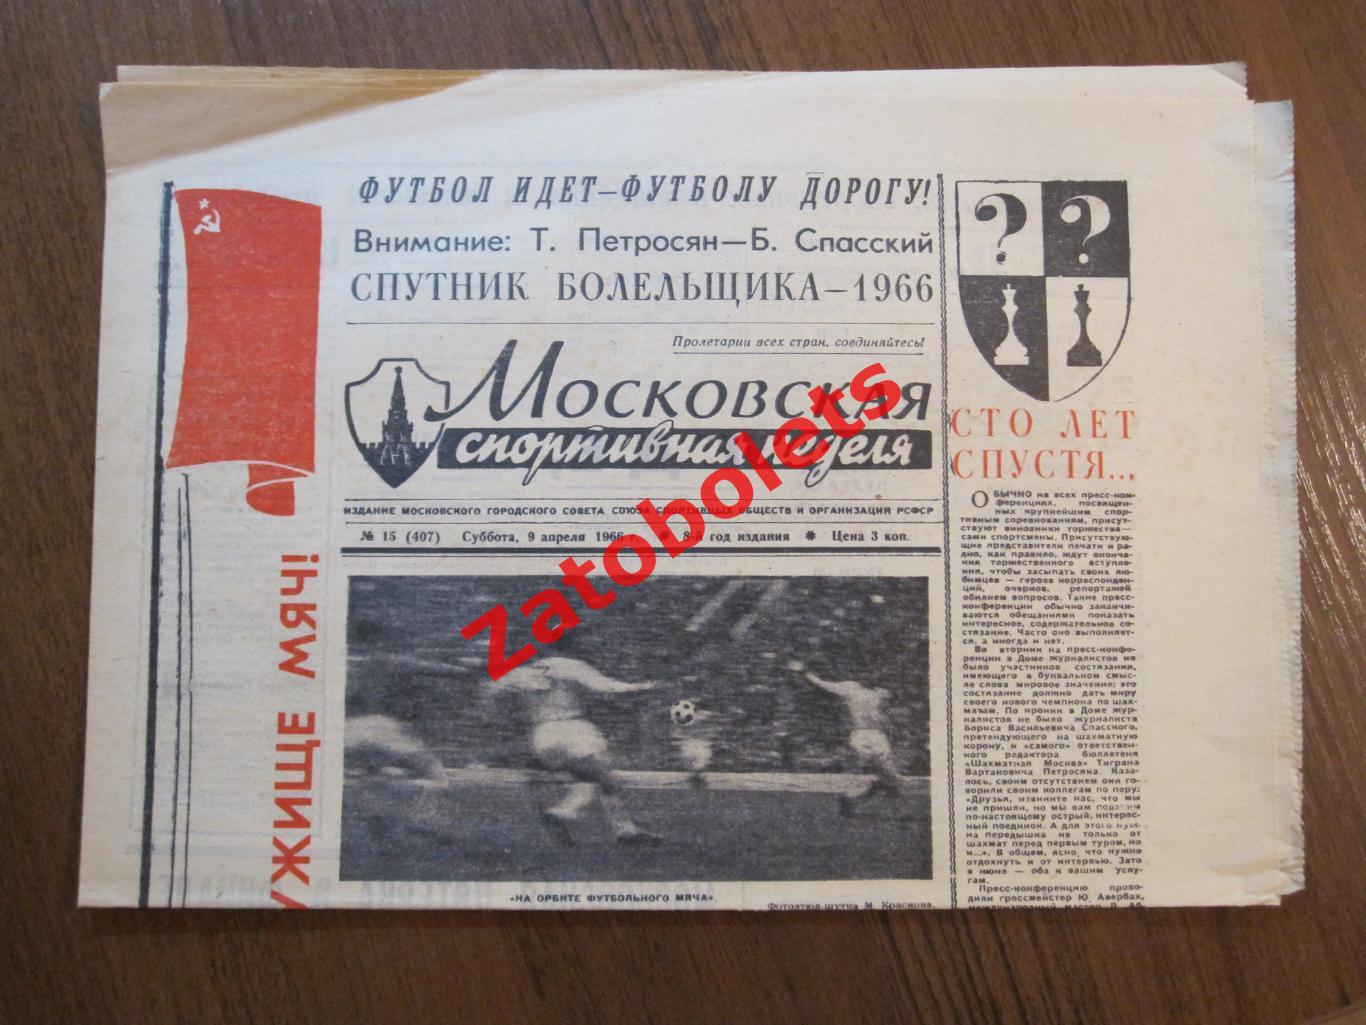 Московская спортивная неделя 09.04.1966 Футбол (Баскетбол ЦСКА)